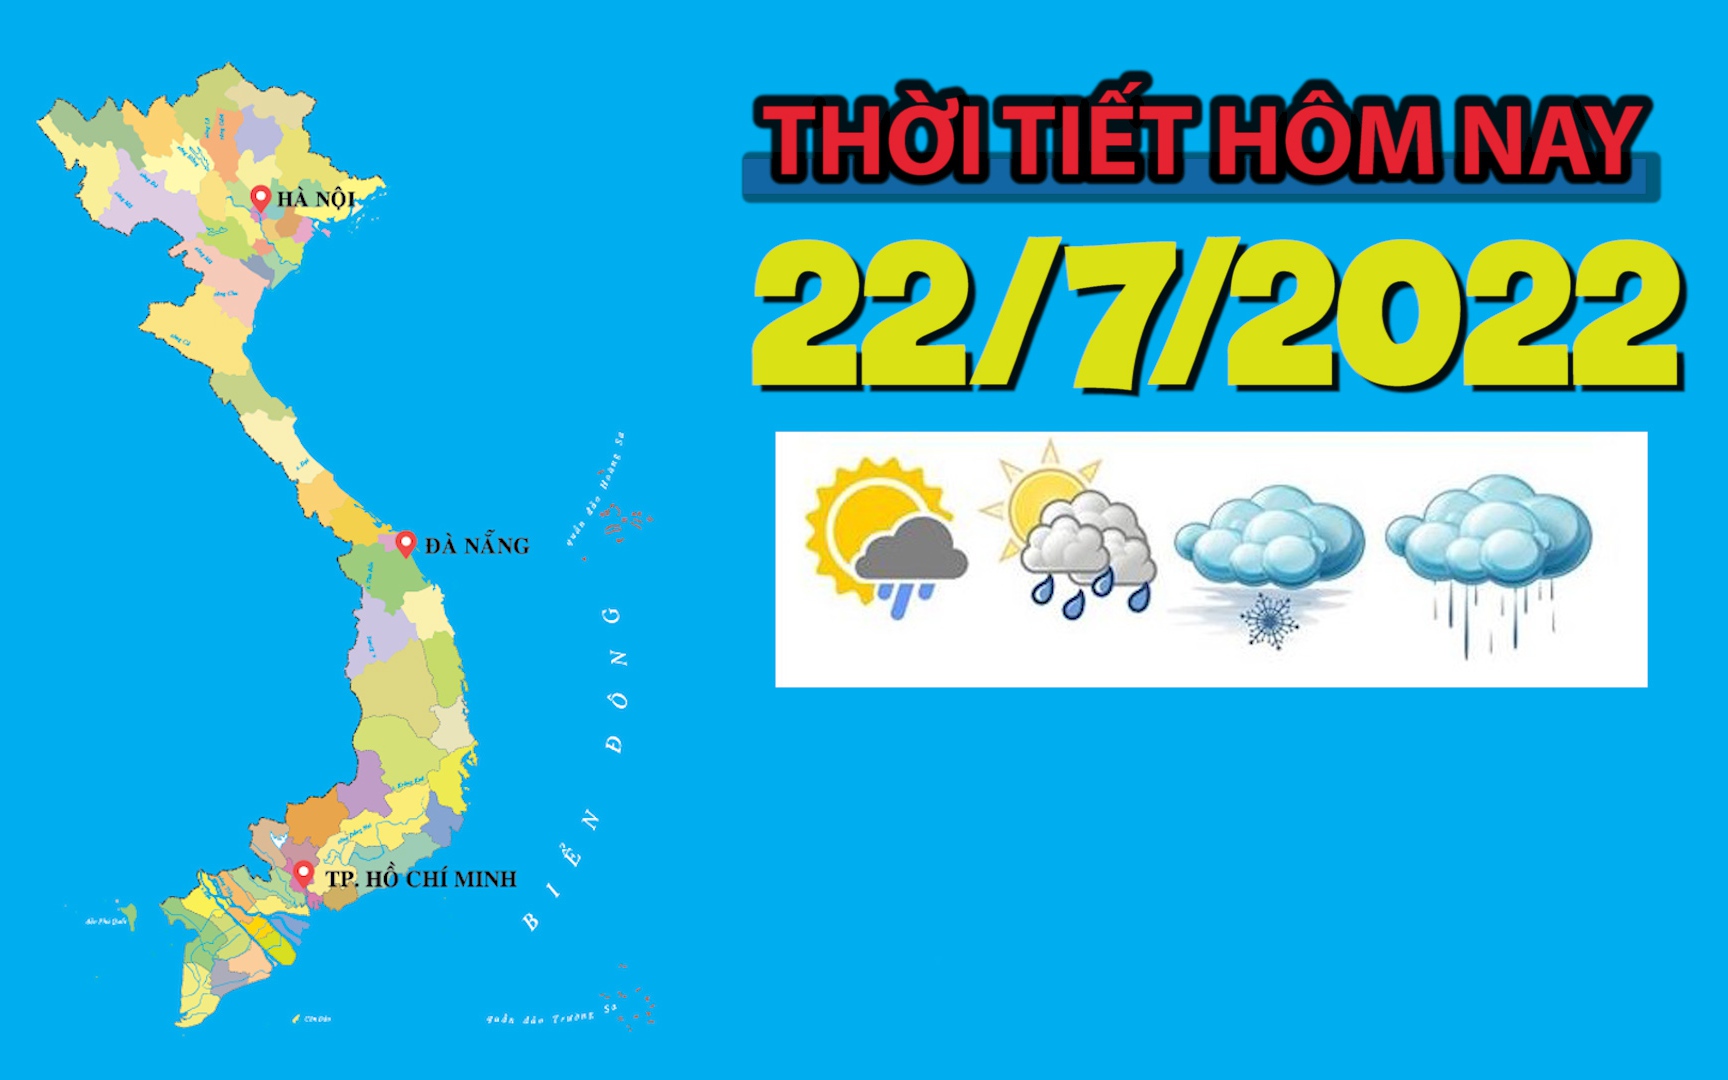 Thời tiết hôm nay 22/7/2022: Hà Nội, Bắc Bộ và Bắc Trung Bộ có mưa rào, rải rác có dông